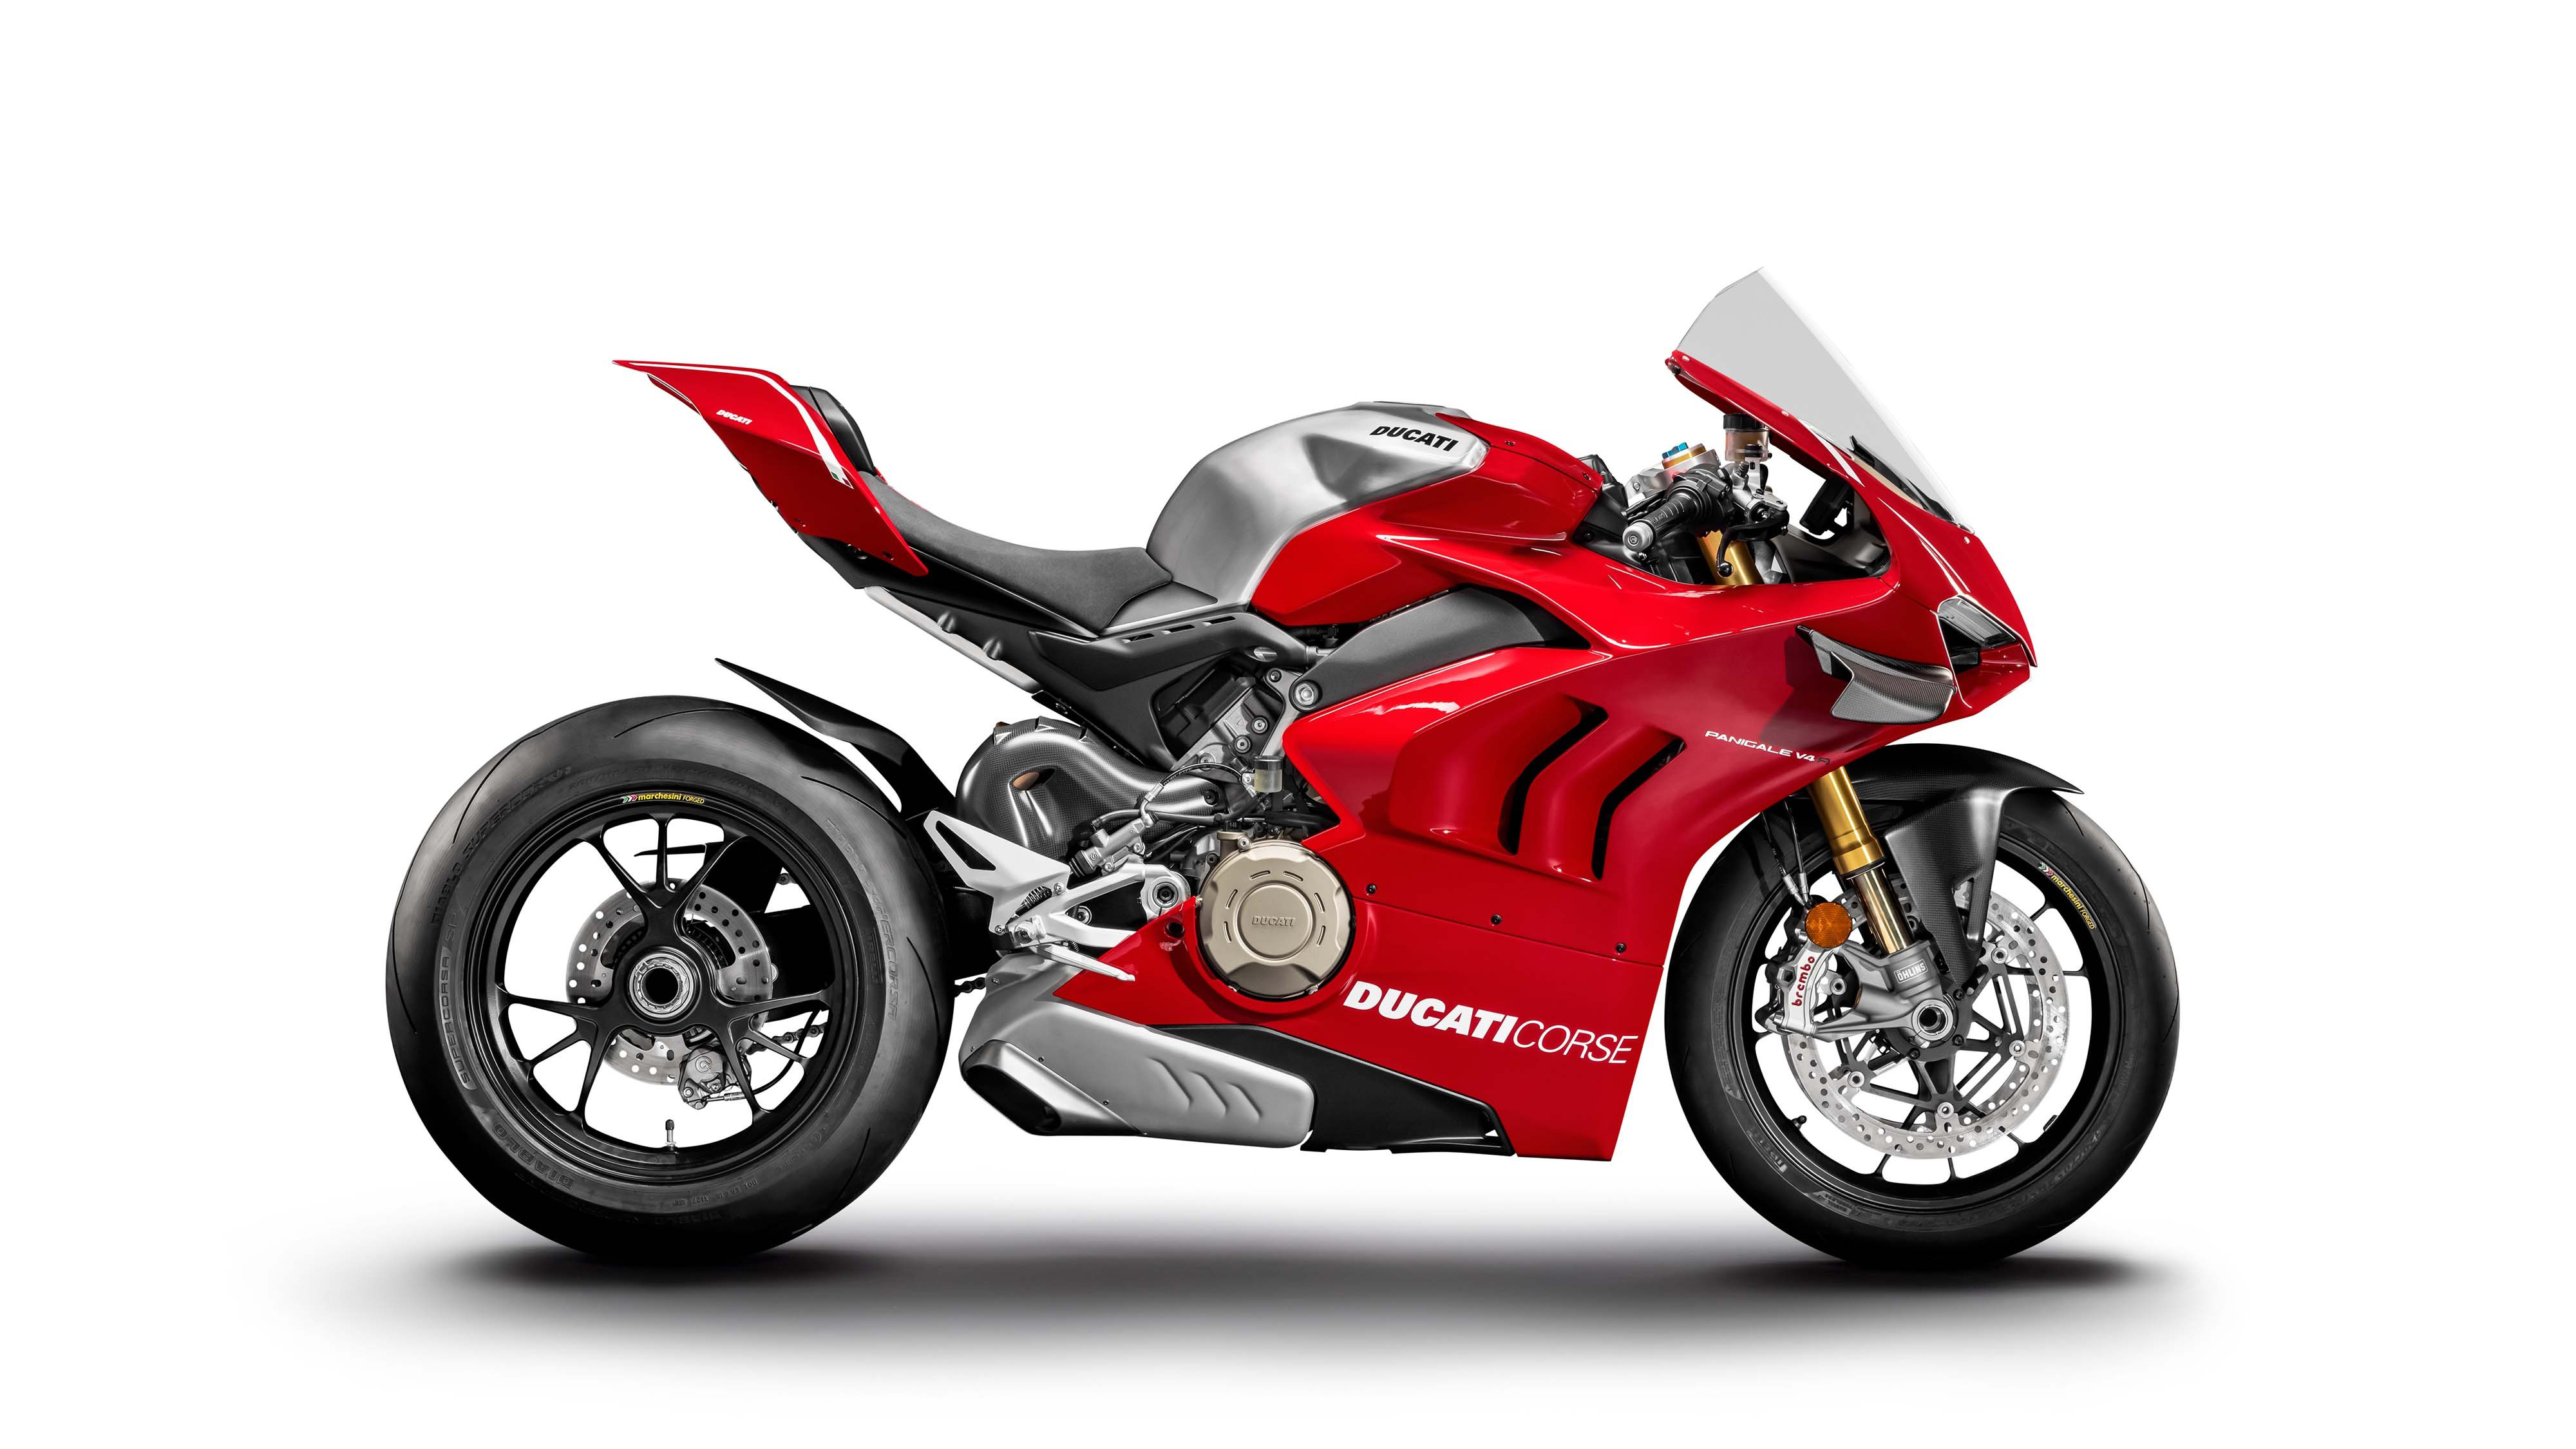 2019 Ducati Panigale V4-R 4K